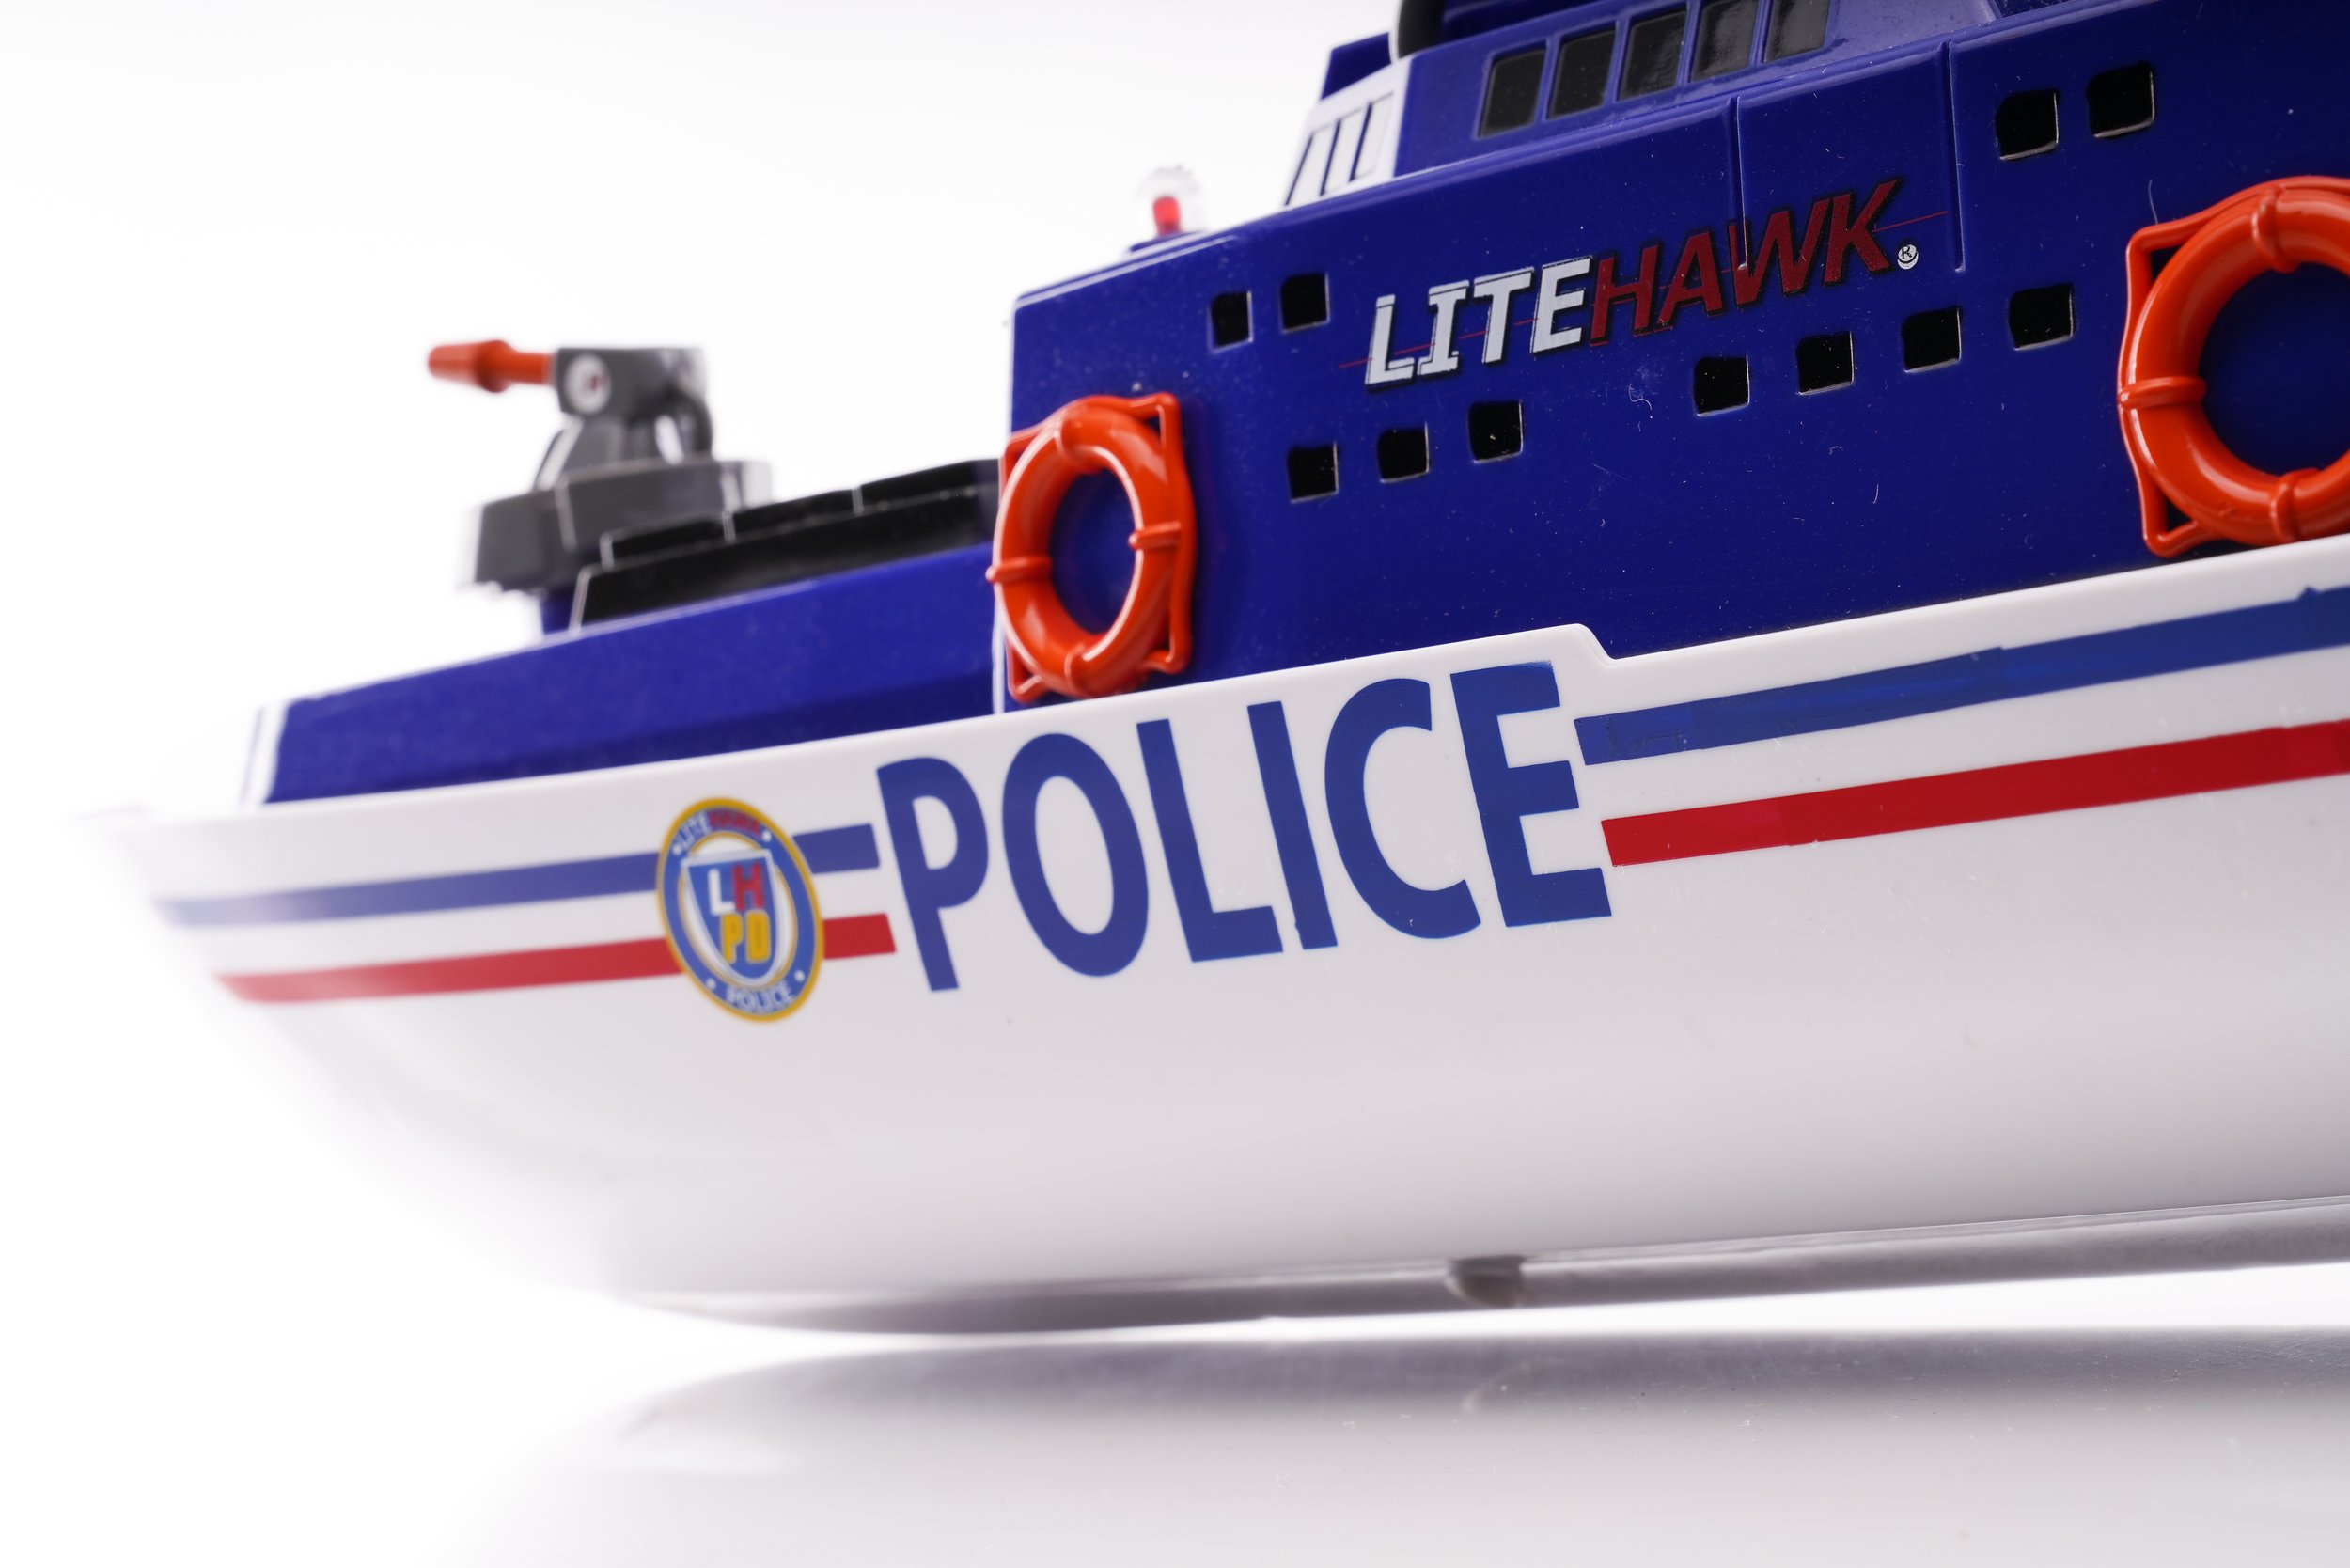 Police Boat (6).jpg